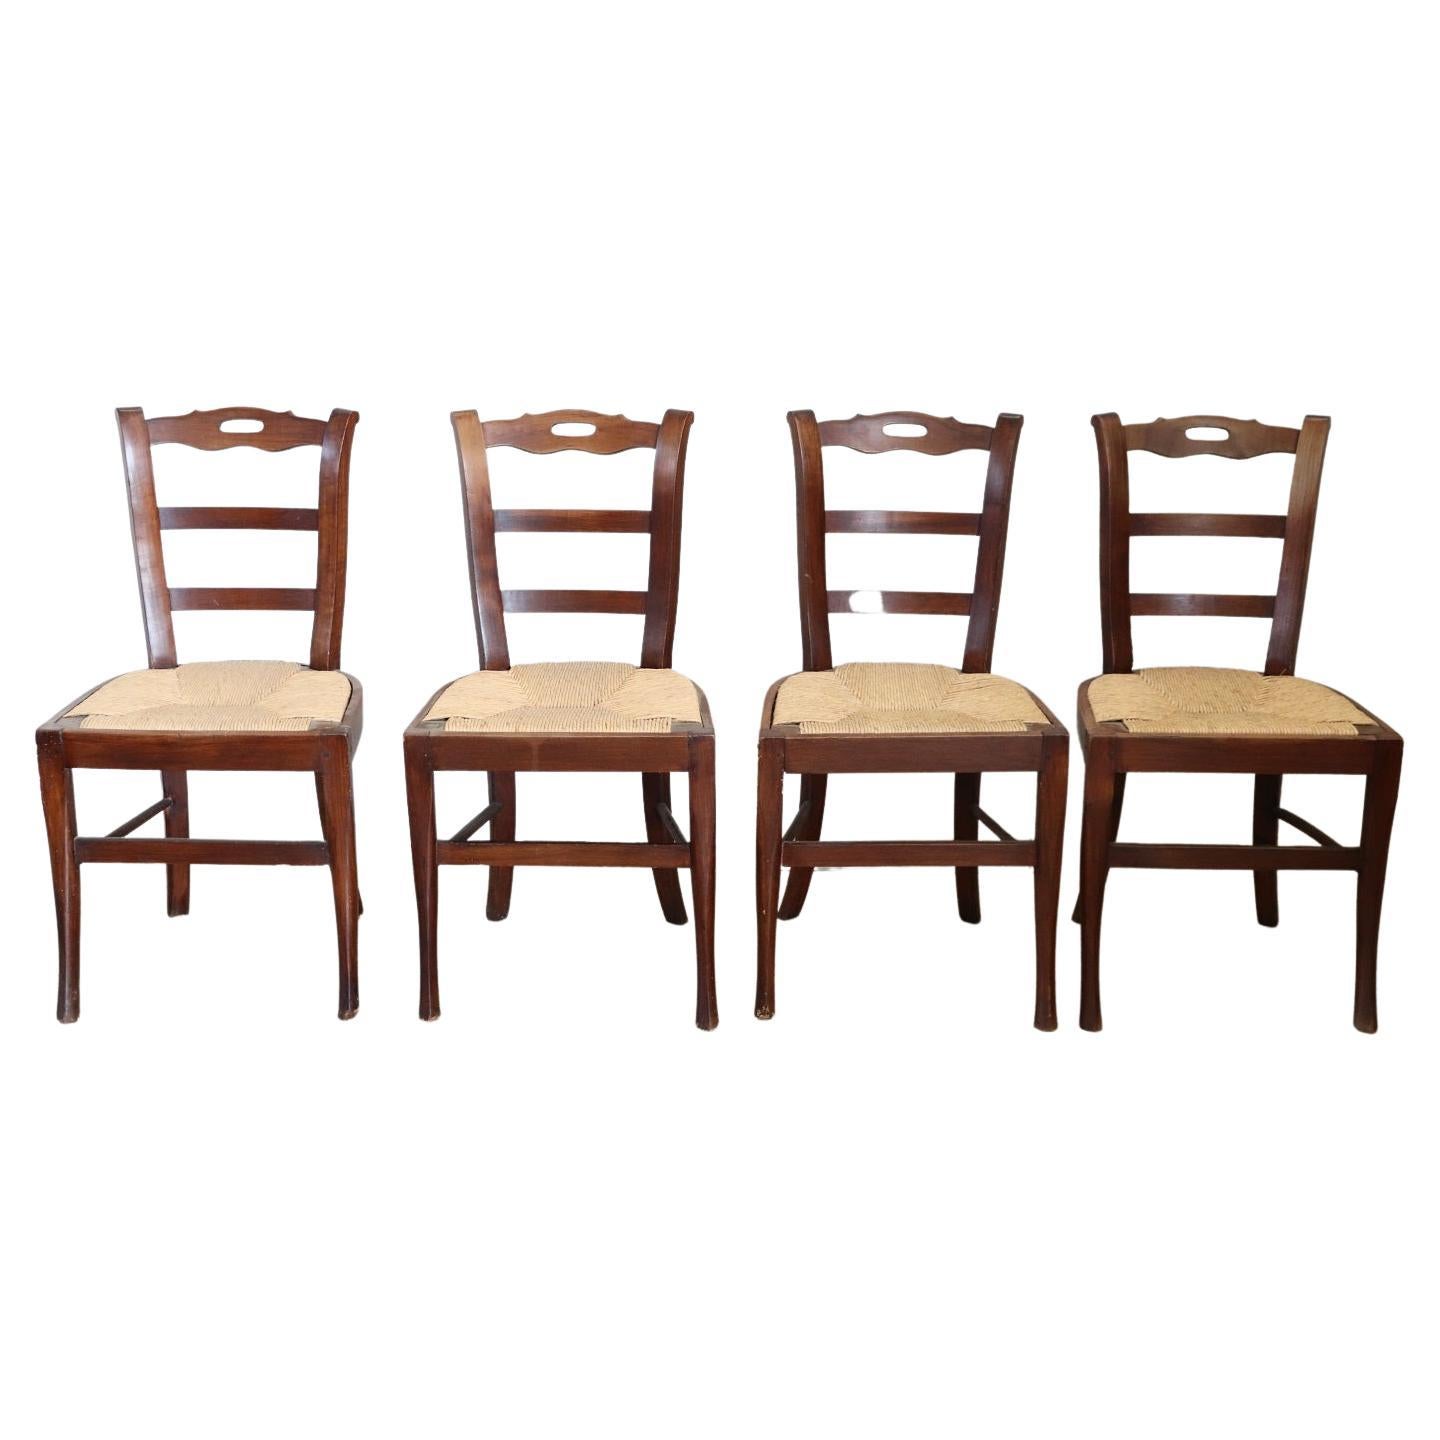 Ensemble de quatre chaises anciennes du 19ème siècle en bois de cerisier avec assise en paille